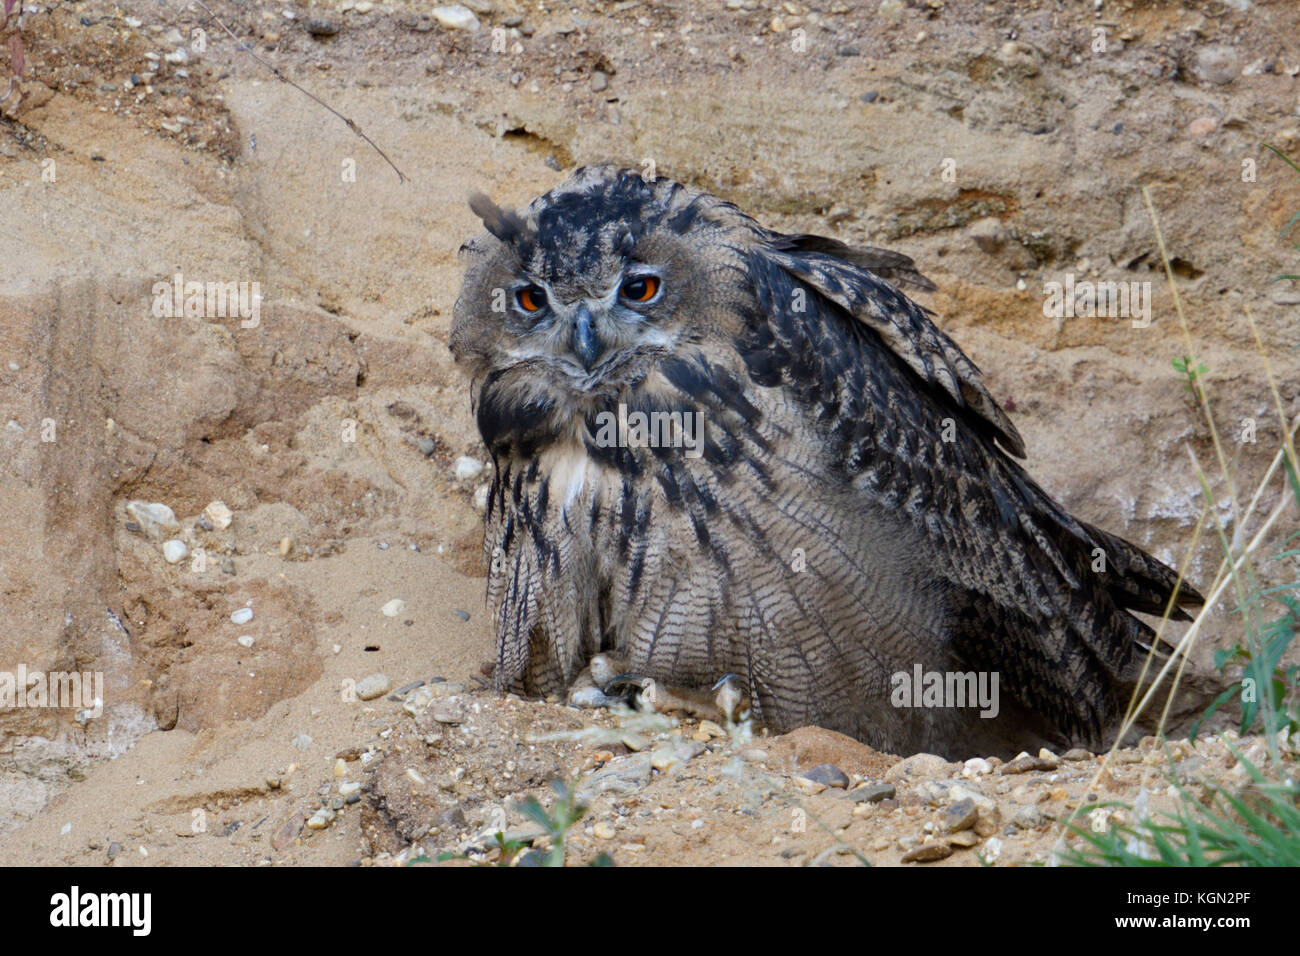 Grand hiboux / europaeische uhus ( Bubo bubo ), jeune oiseau, assis dans la pente d'une carrière de sable, l'air fatigué, somnolent, faune, l'Europe. Banque D'Images